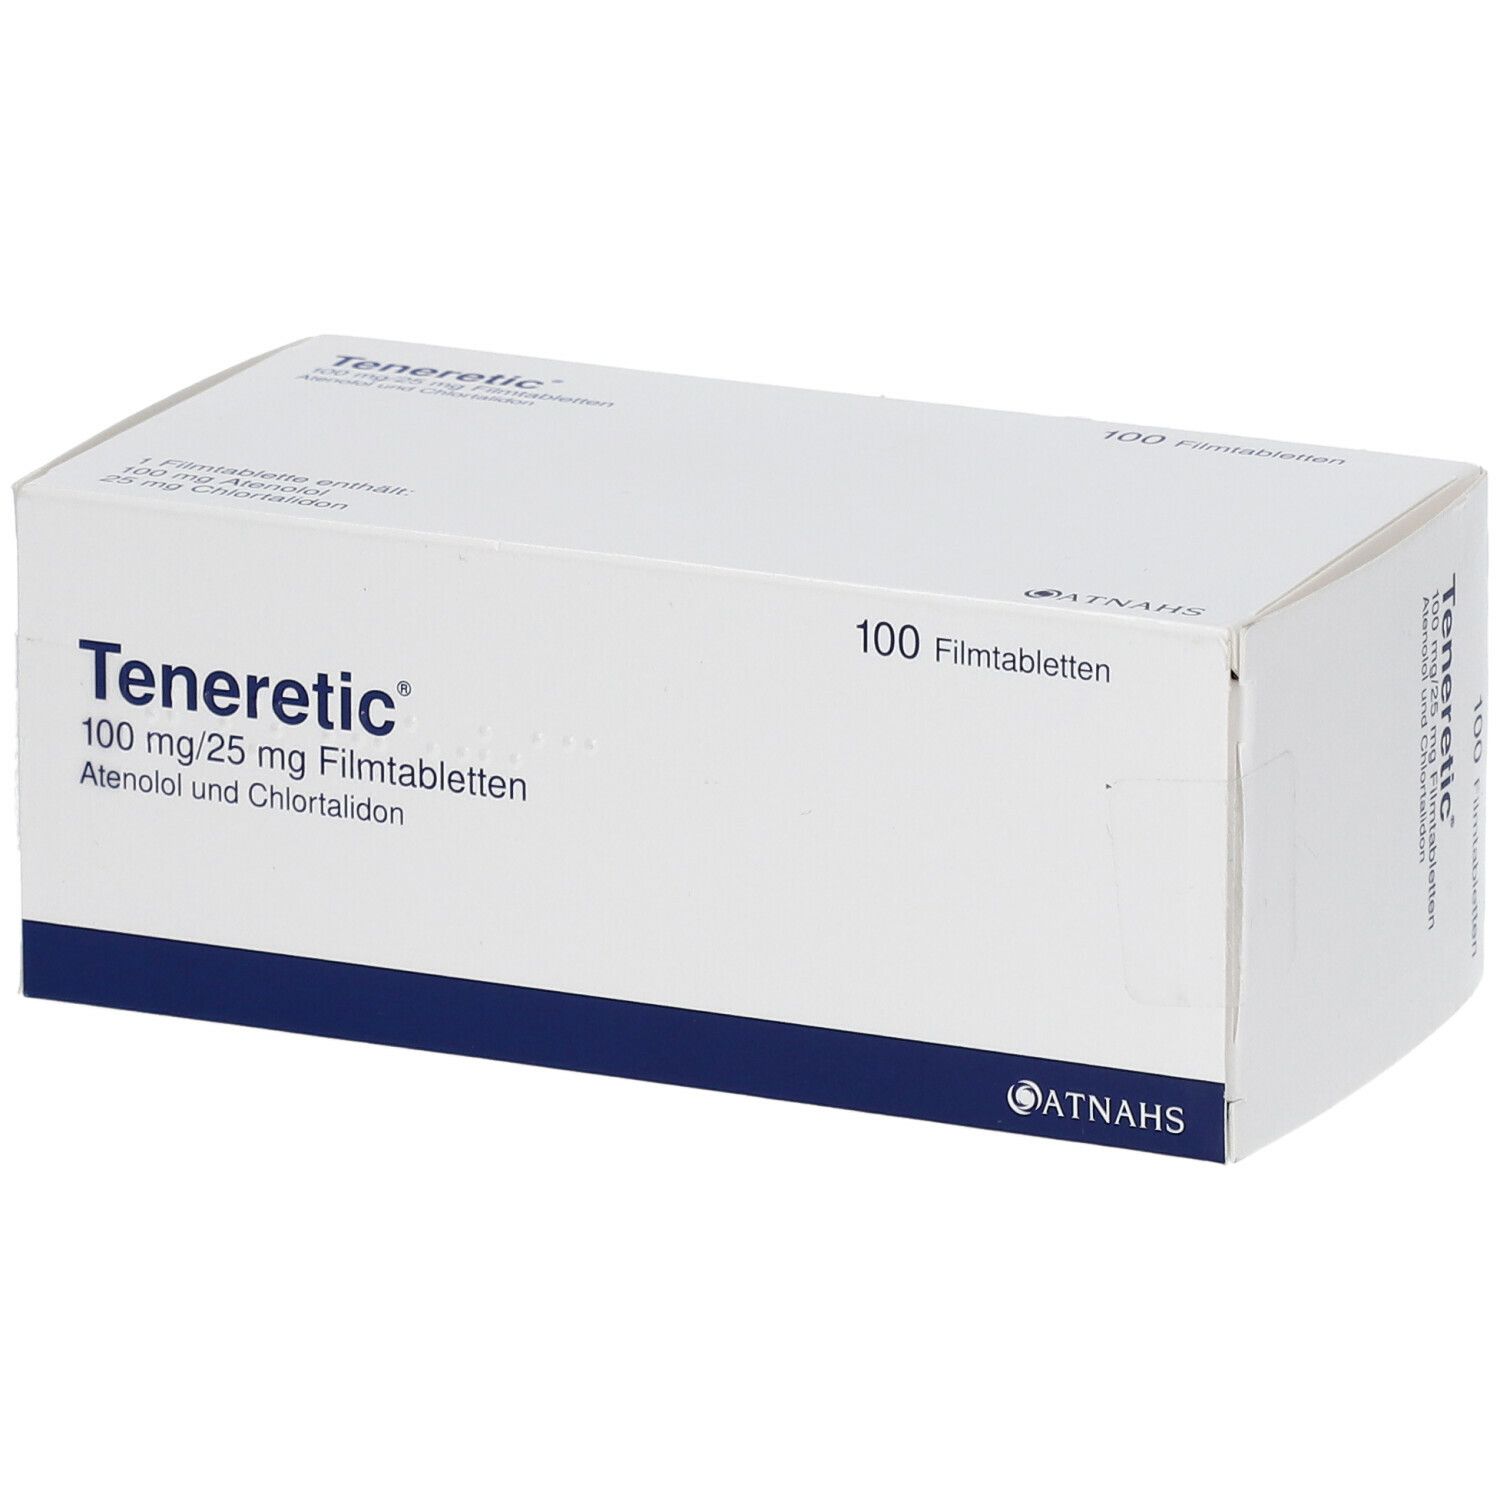 Teneretic® 100 mg/25 mg